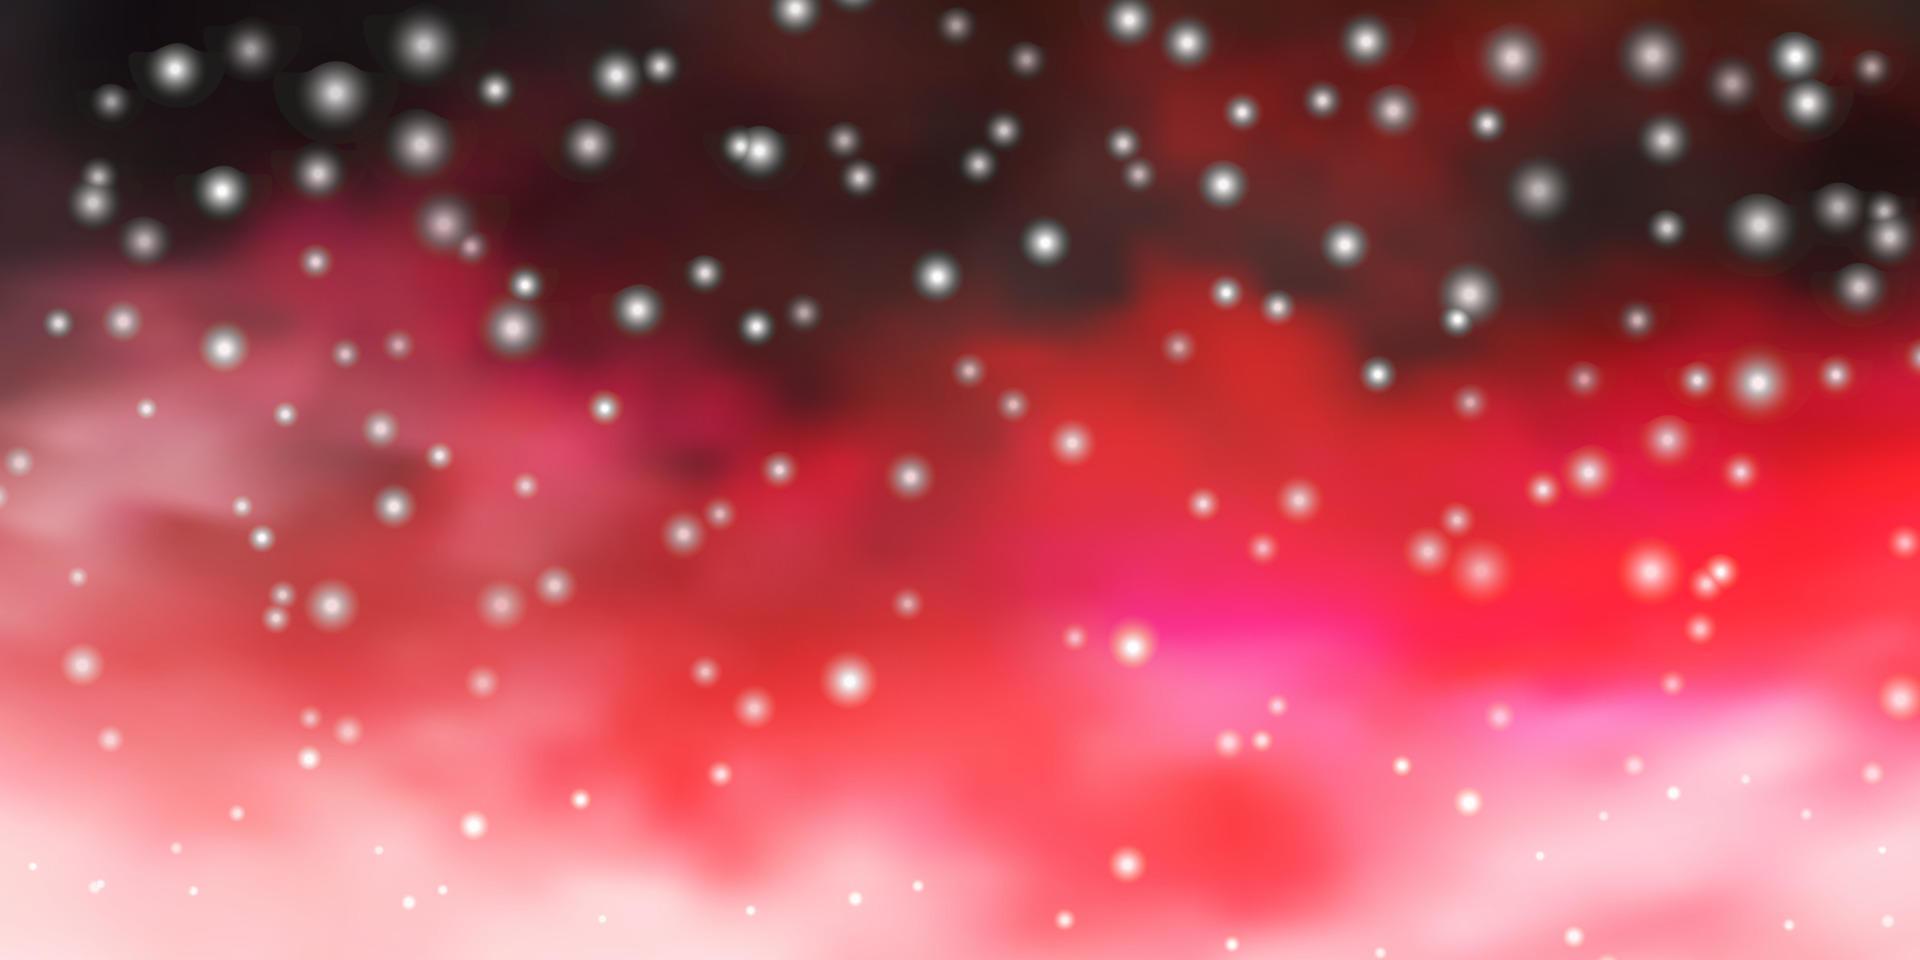 layout de vetor rosa claro e vermelho com estrelas brilhantes.